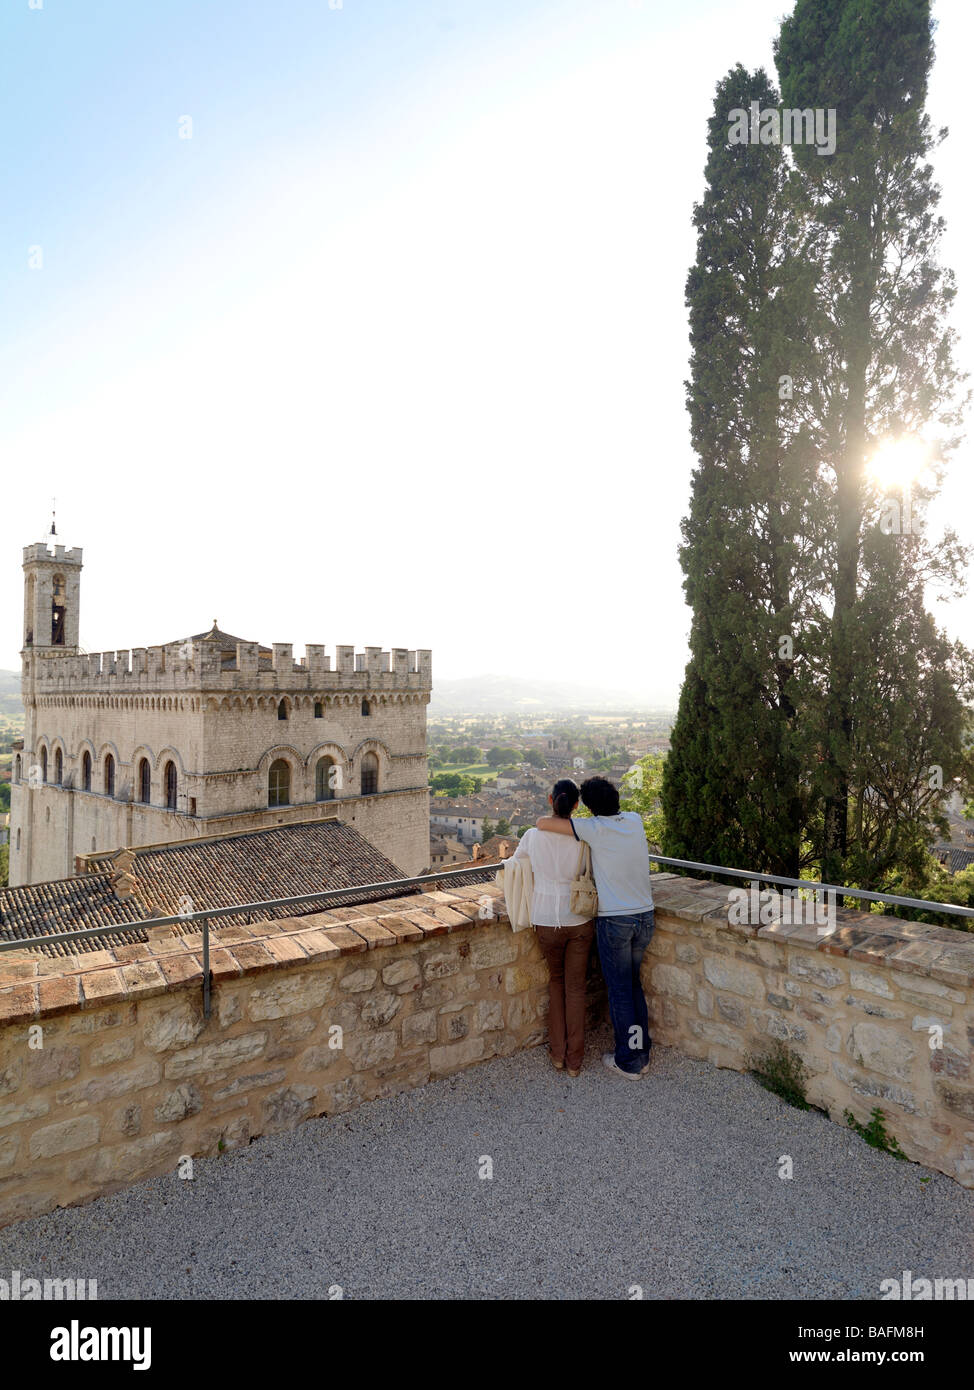 Una giovane coppia gode di un momento romantico insieme nella campagna italiana. Foto Stock